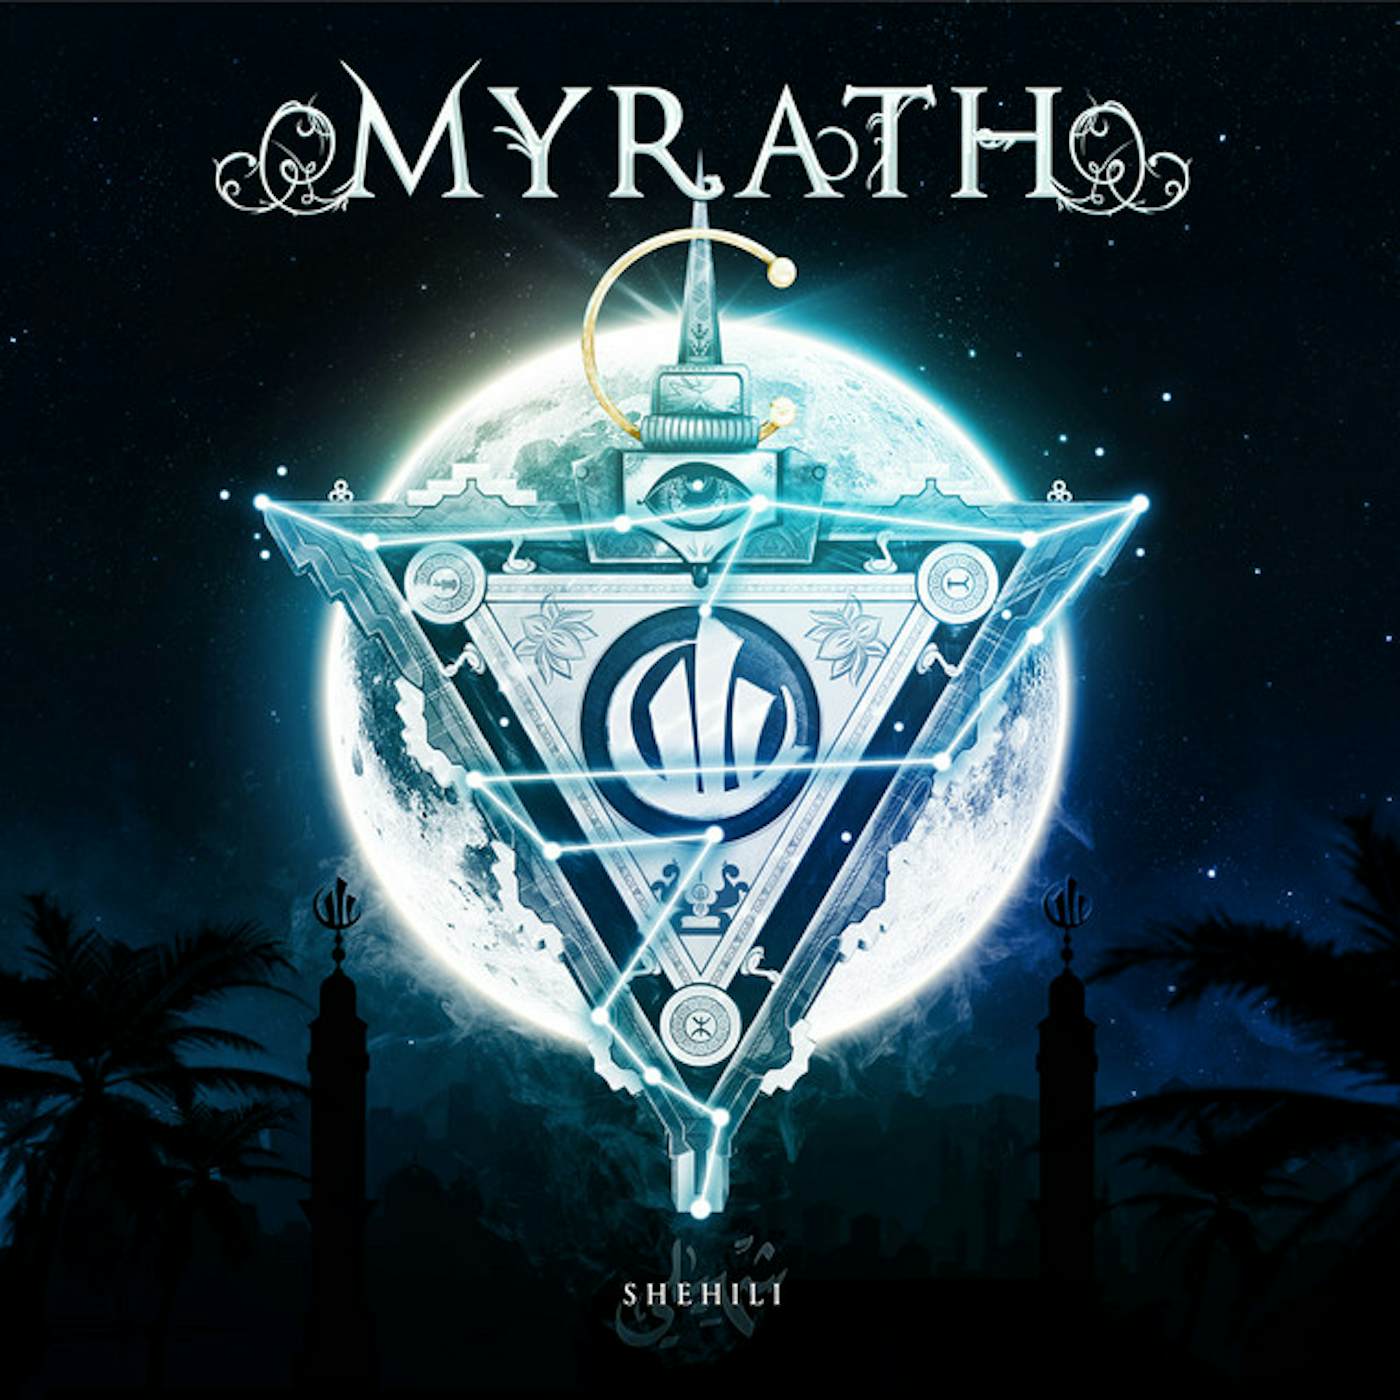 Myrath Shehili Vinyl Record